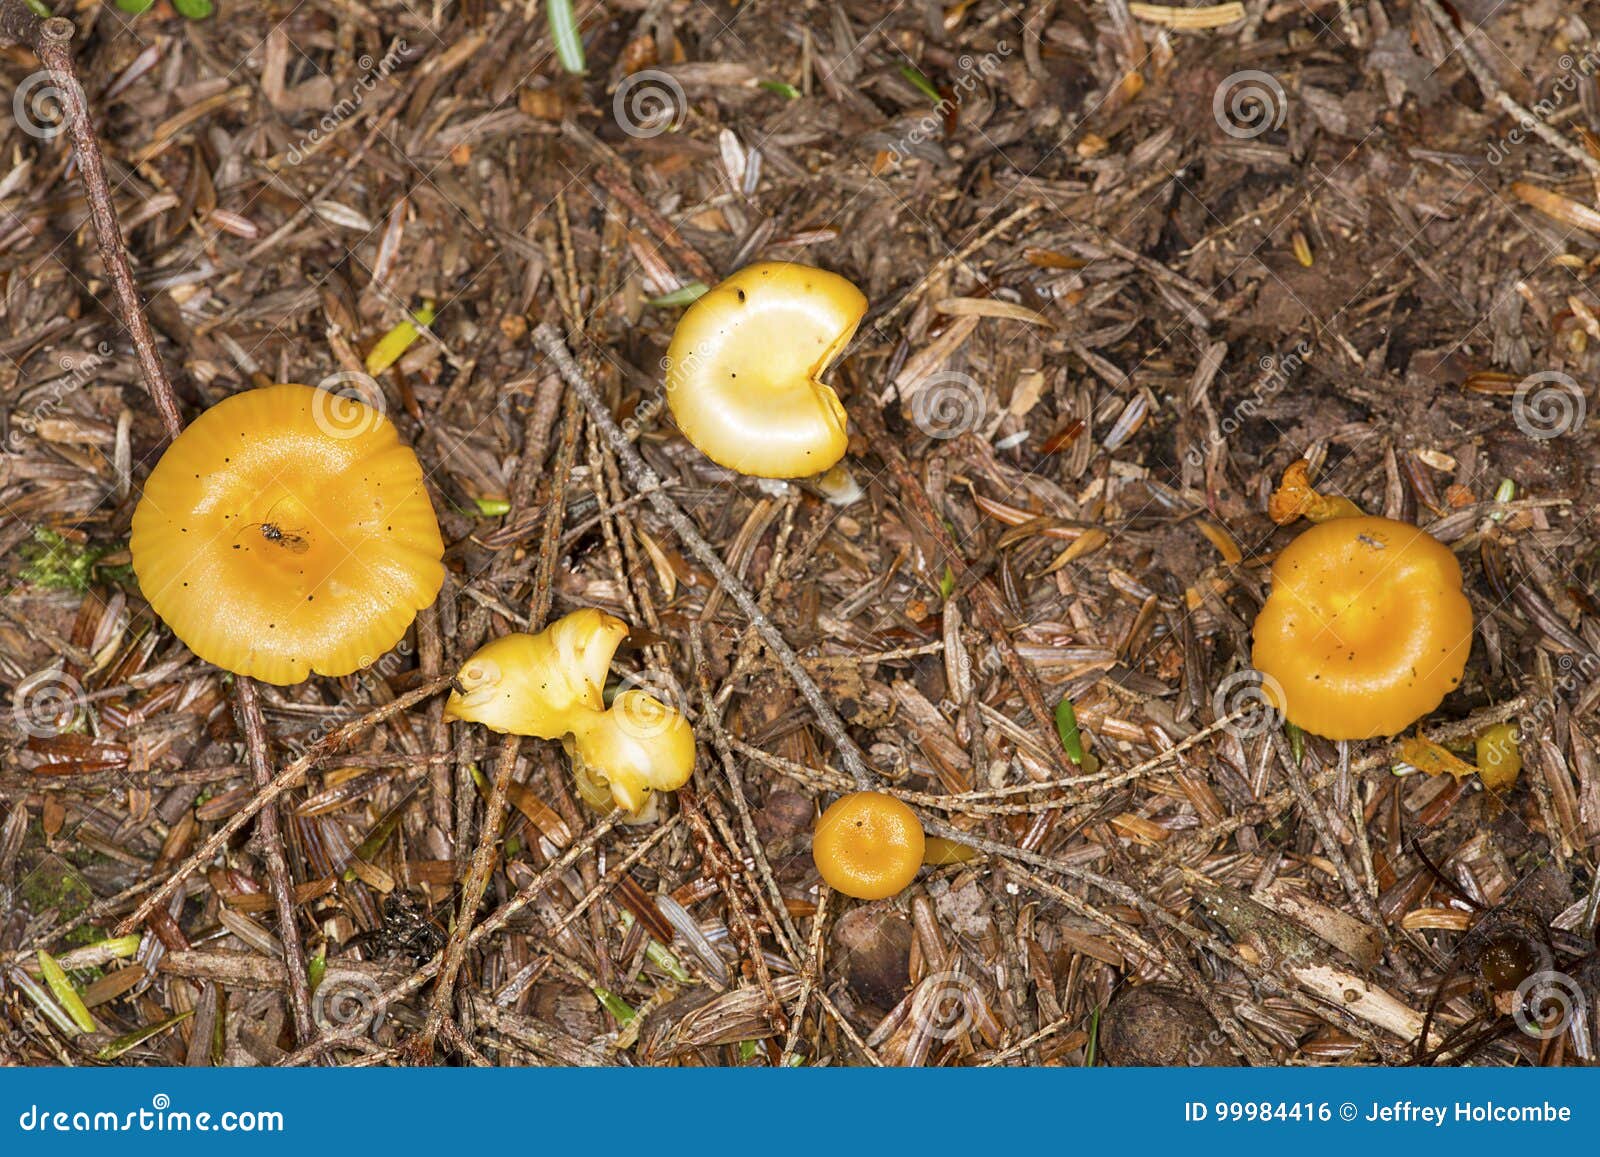 全球野生食用蘑菇科学清单发布，可食用蘑菇共2189种_绿政公署_澎湃新闻-The Paper